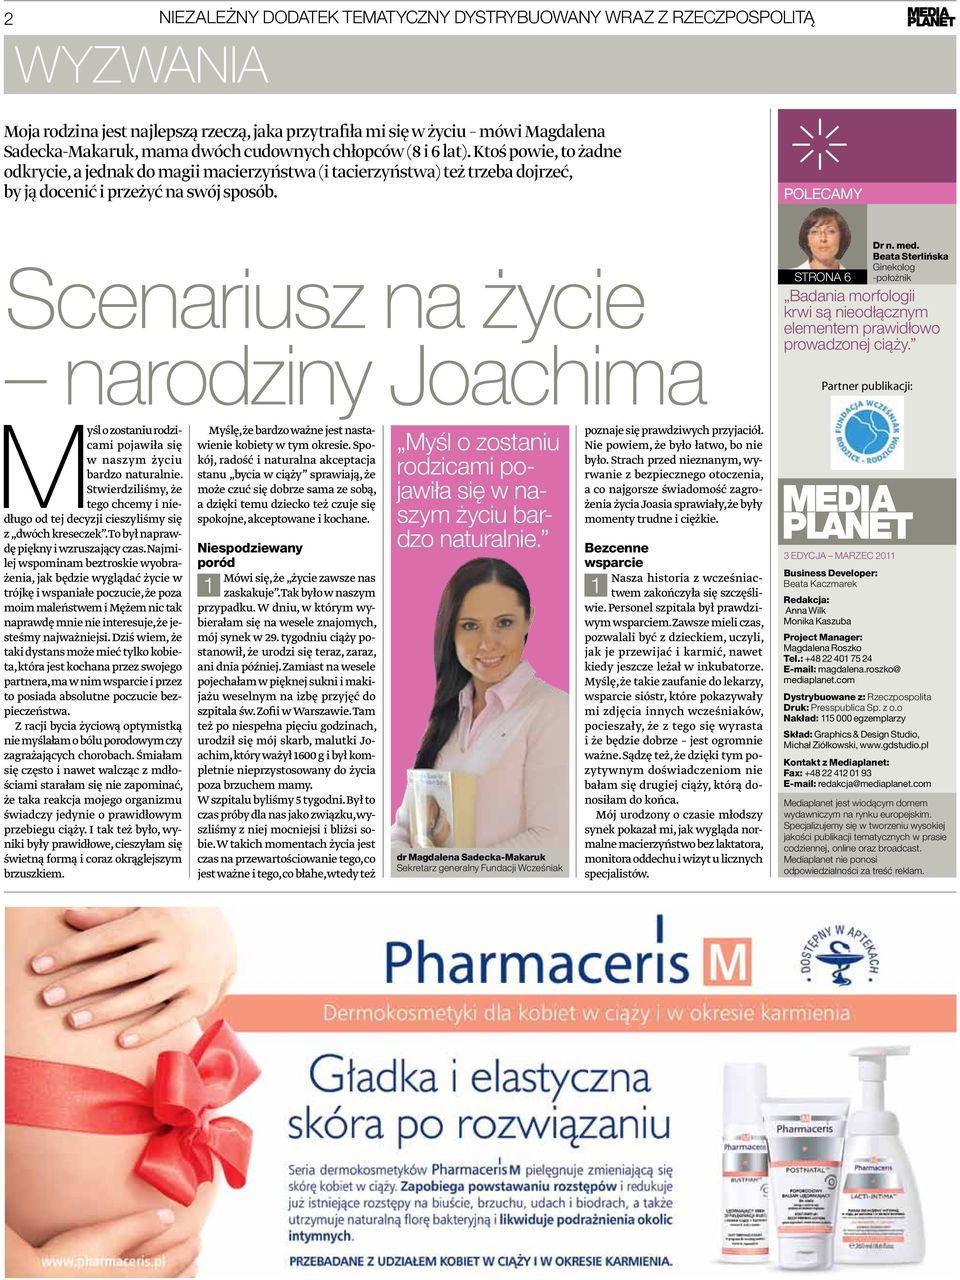 polecamy Scenariusz na życie narodziny Joachima strona 6 Dr n. med. Beata Sterlińska Ginekolog -położnik Badania morfologii krwi są nieodłącznym elementem prawidłowo prowadzonej ciąży.